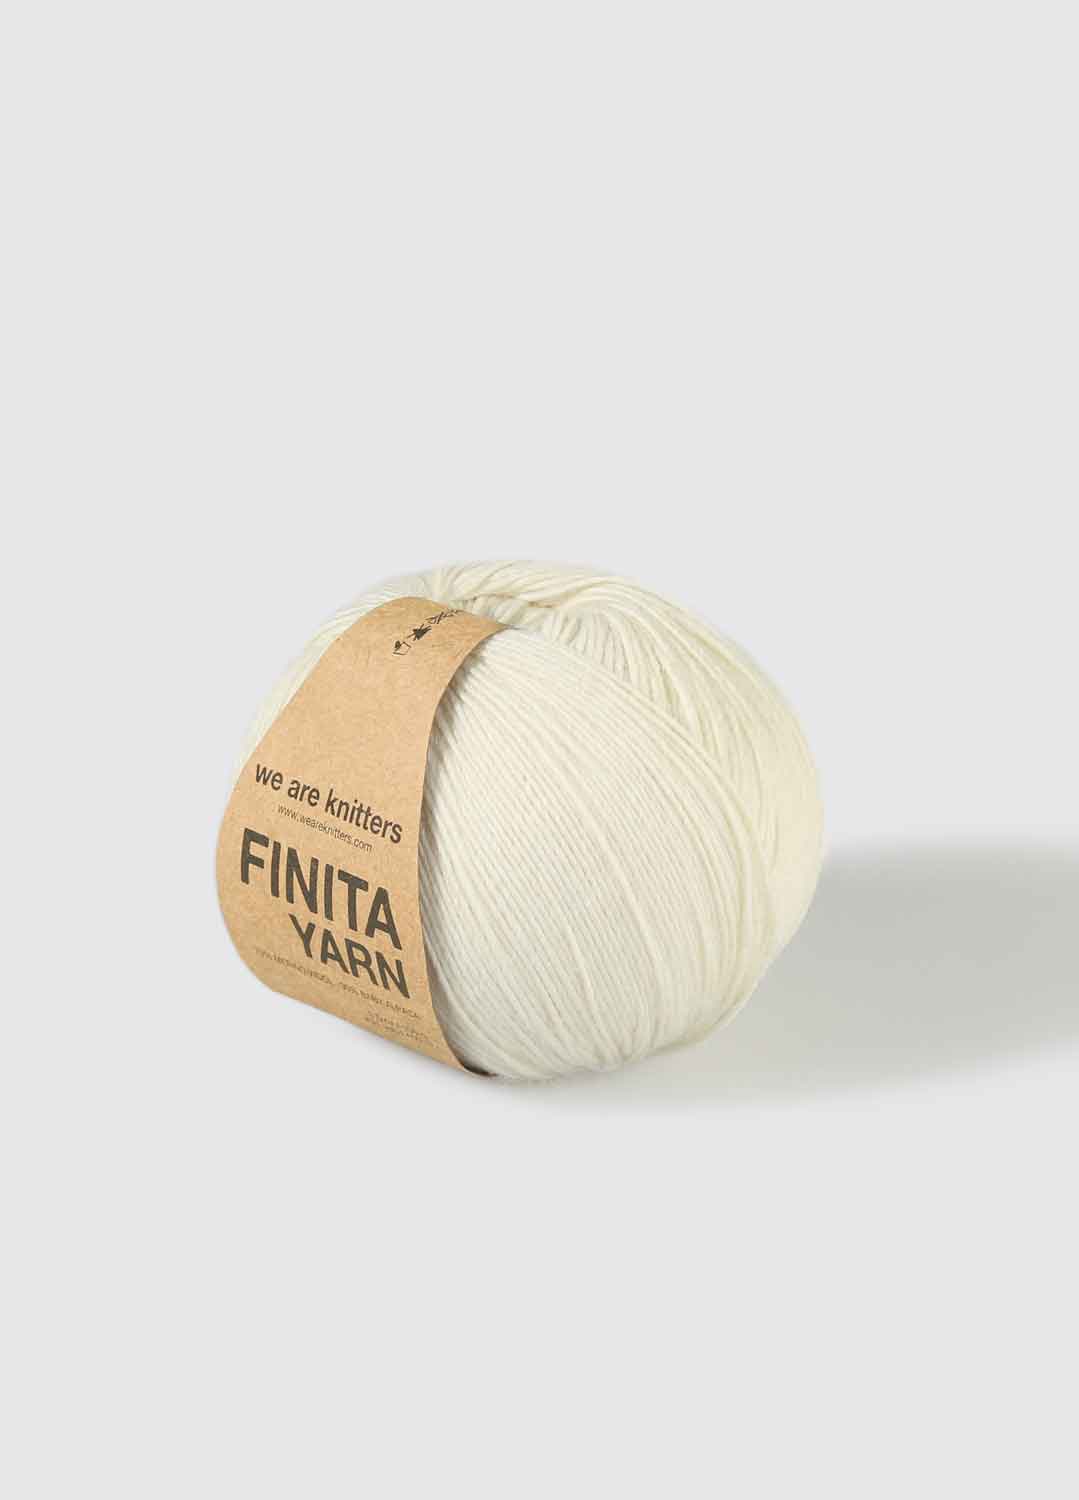 Finita Yarn Natural